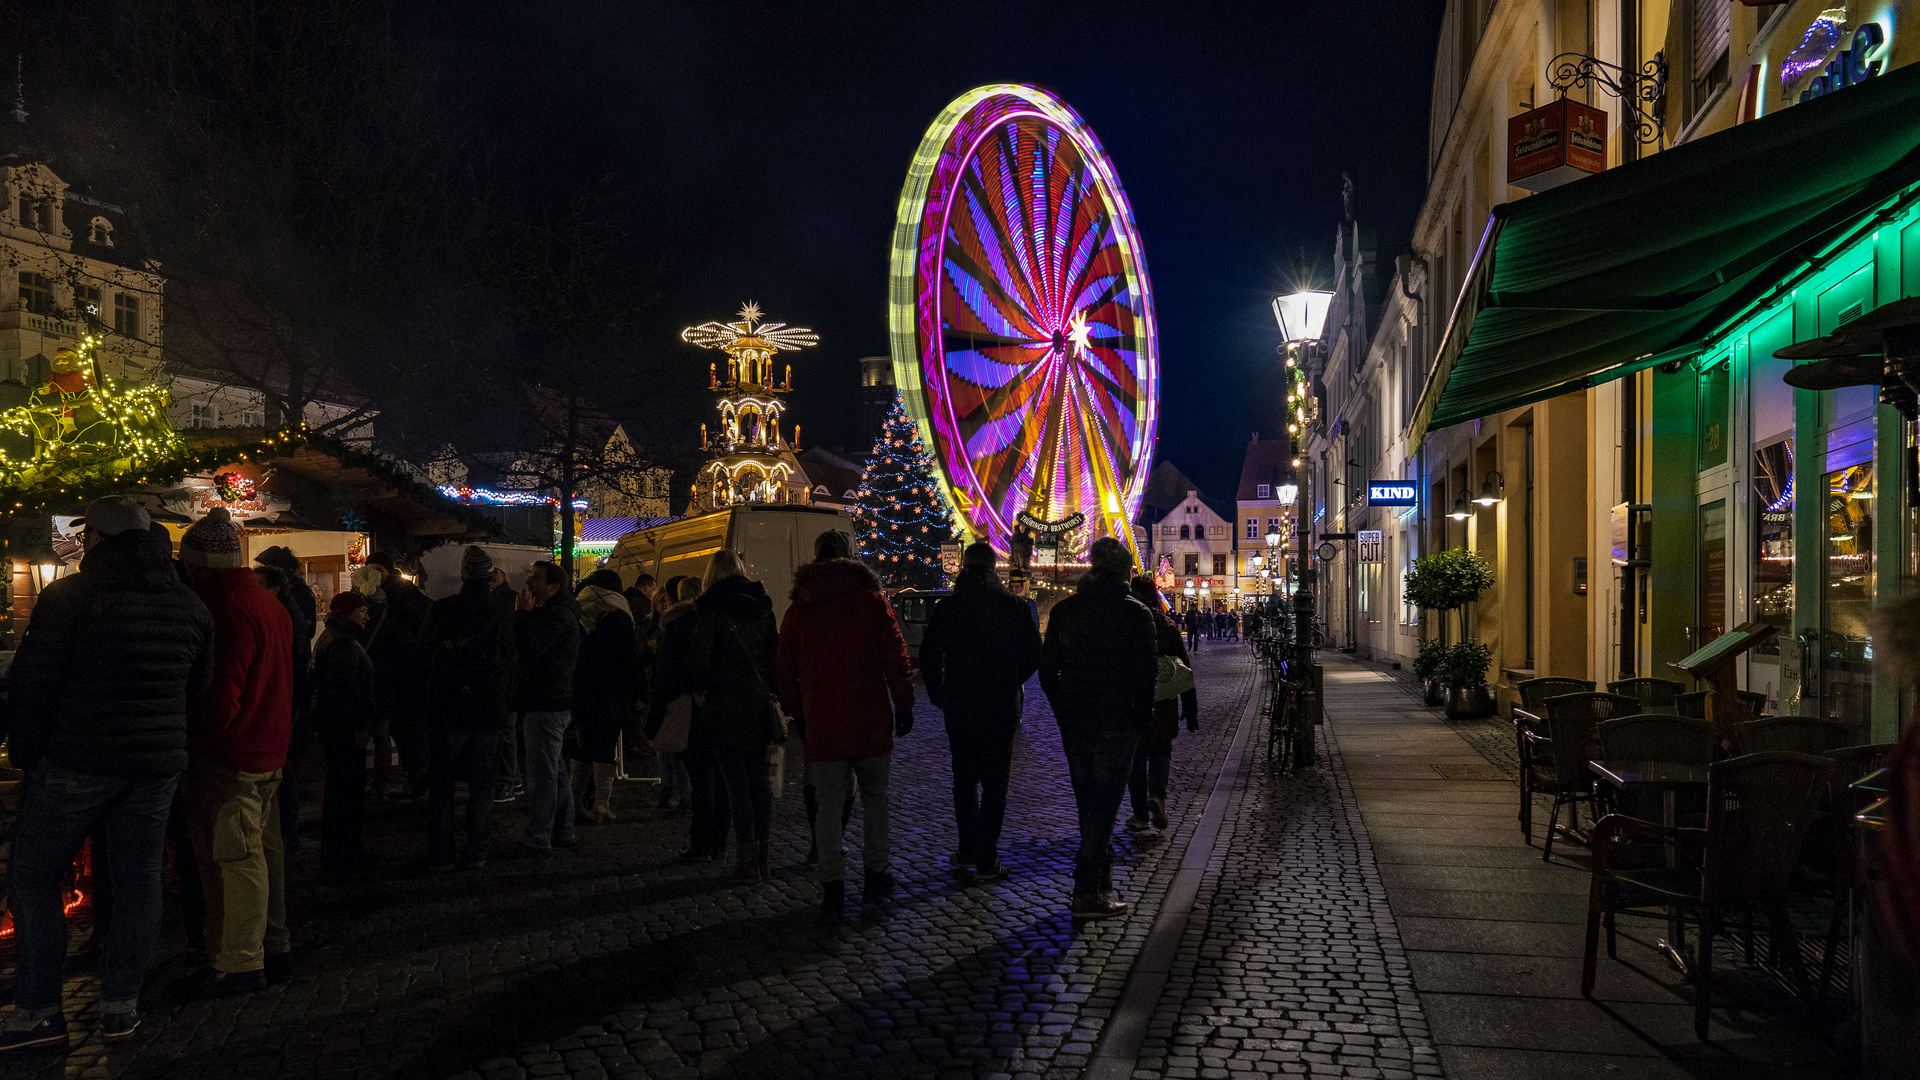 Riesenrad in Cottbus auf dem Weihnachtsmarkt